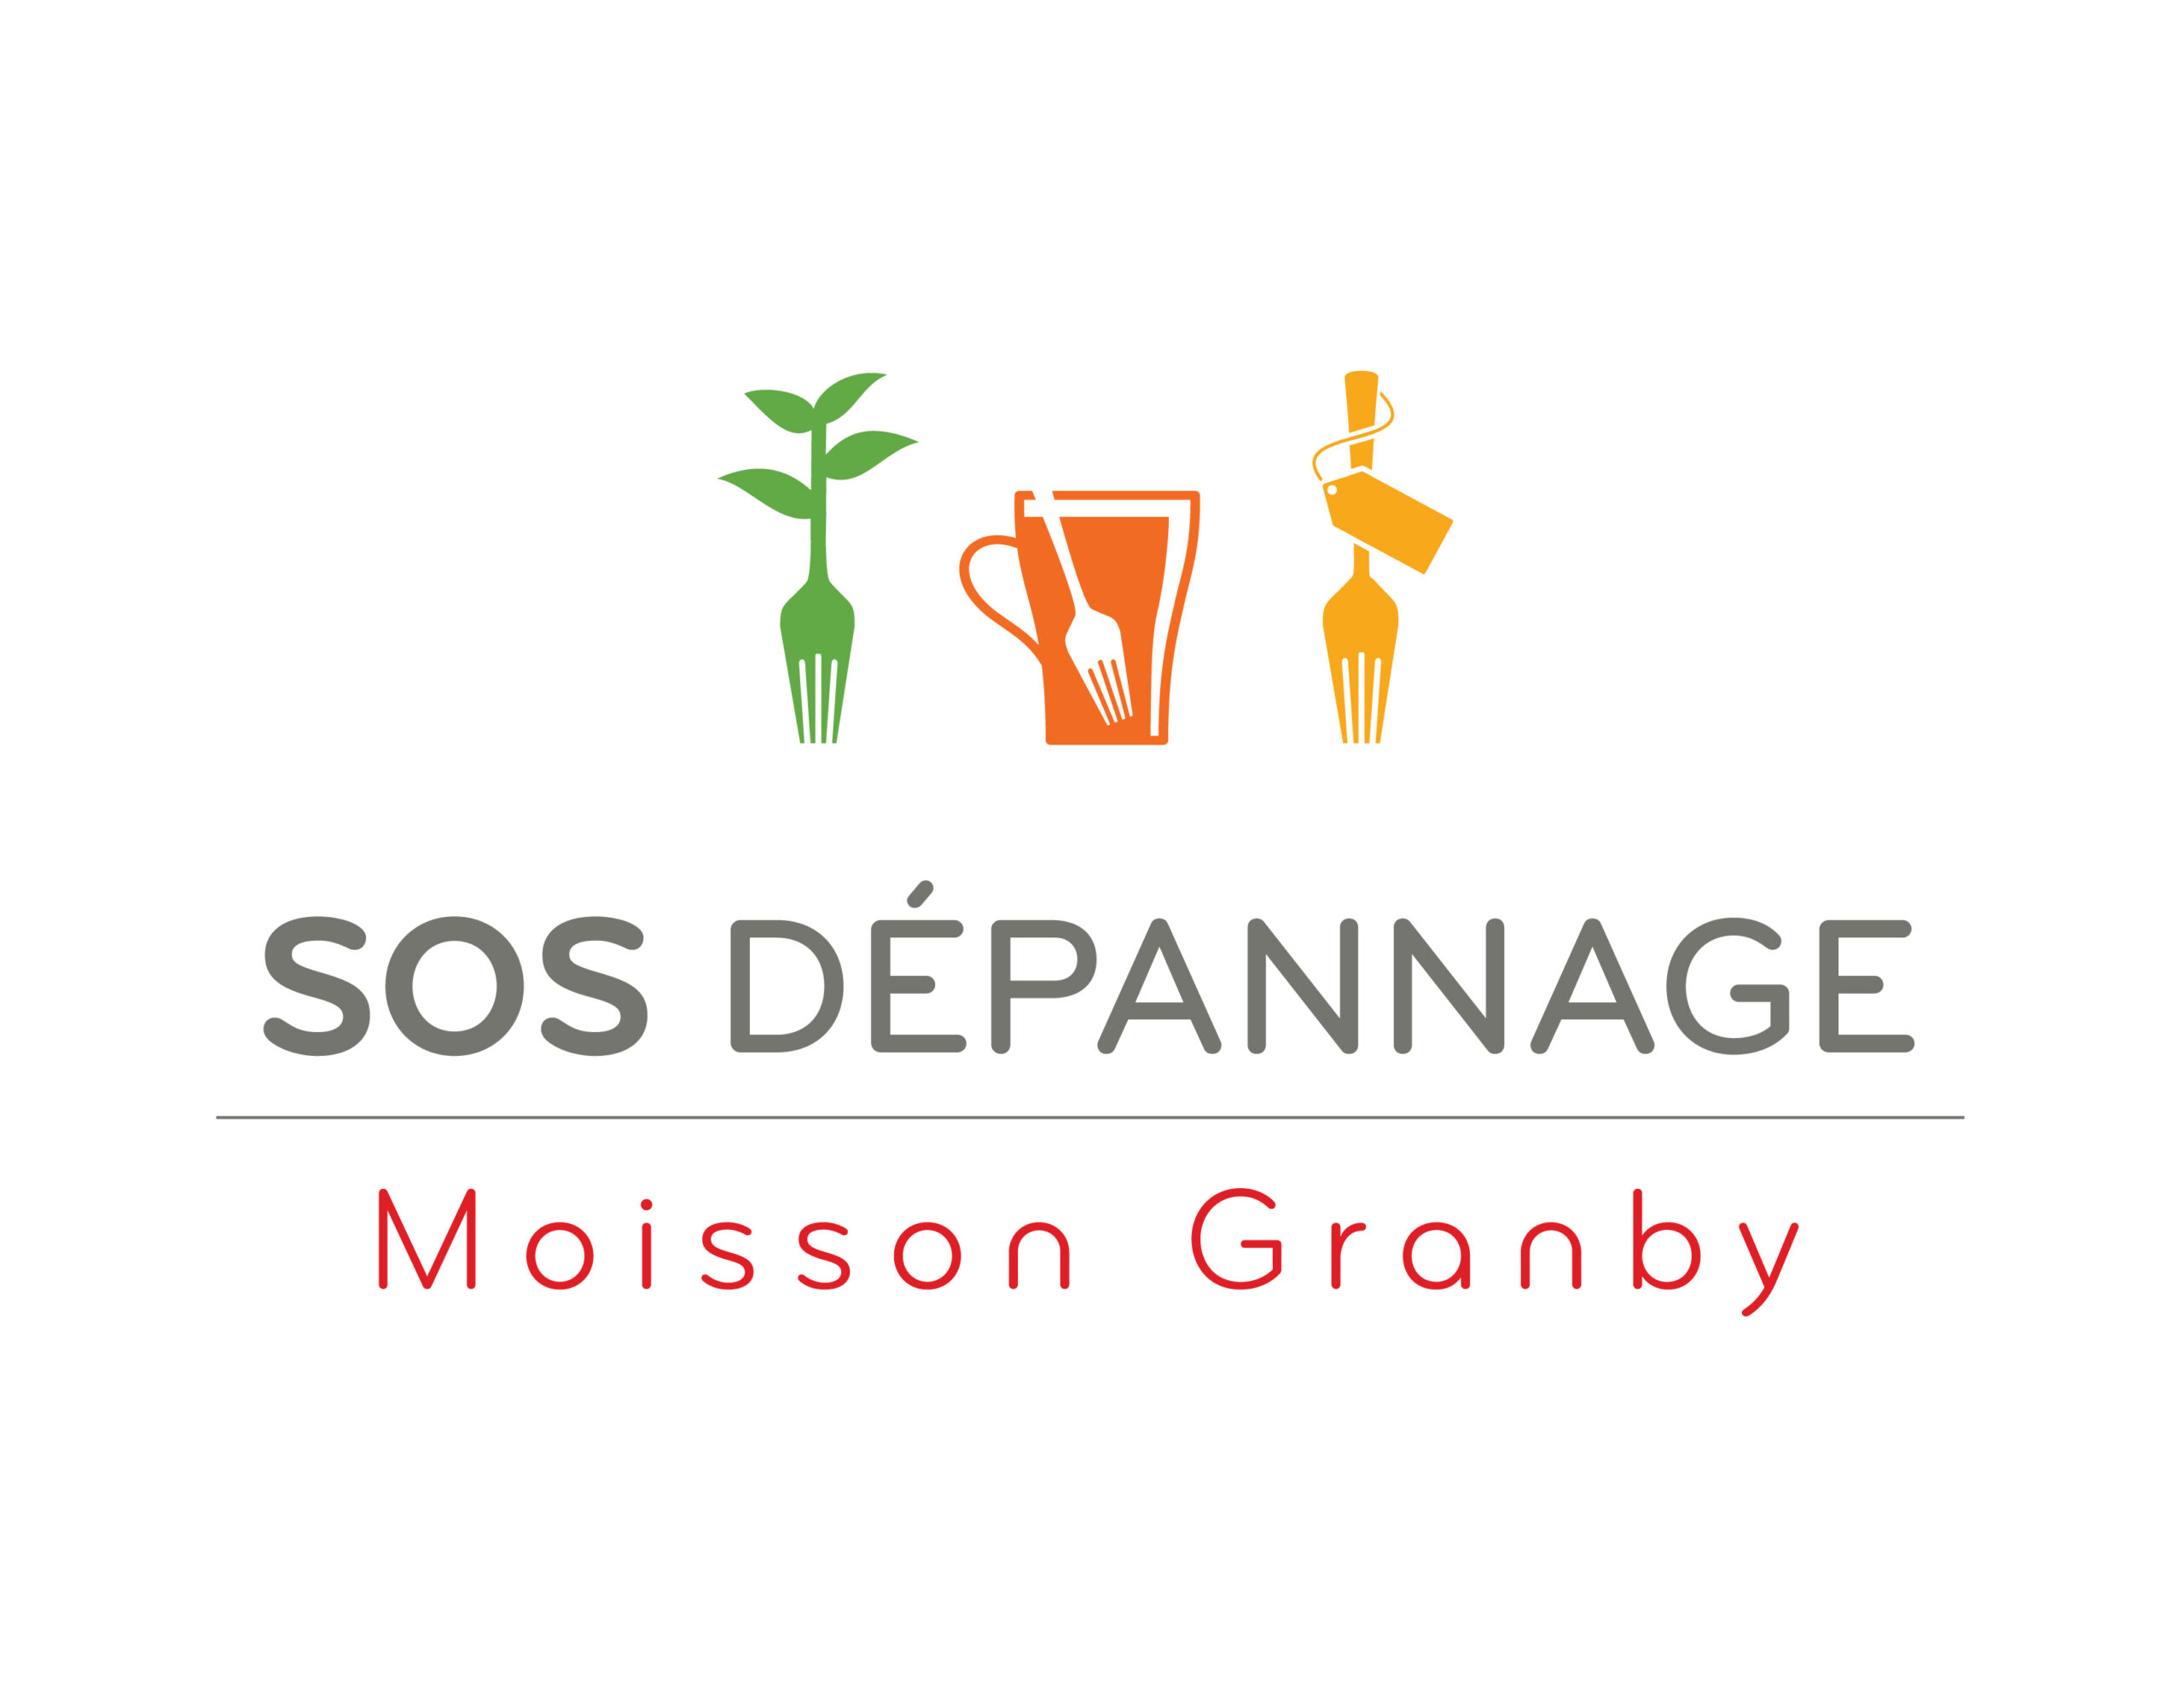 SOS Moisson Granby